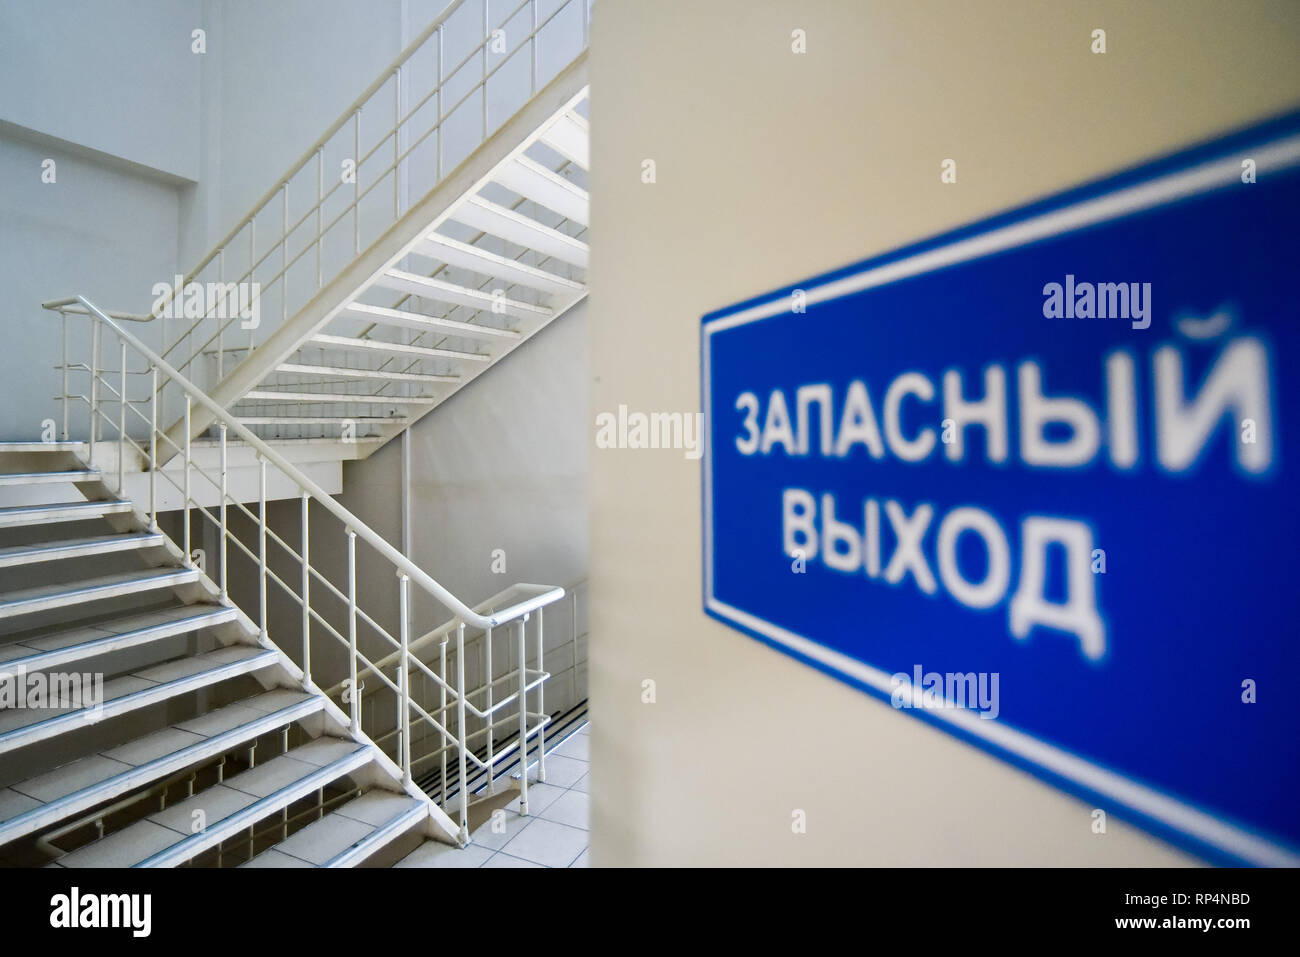 Mosca, Russia - 5 Aprile, 2018: uscita di emergenza sign in russo e multi-volo scalinata in casa moderna. Foto Stock